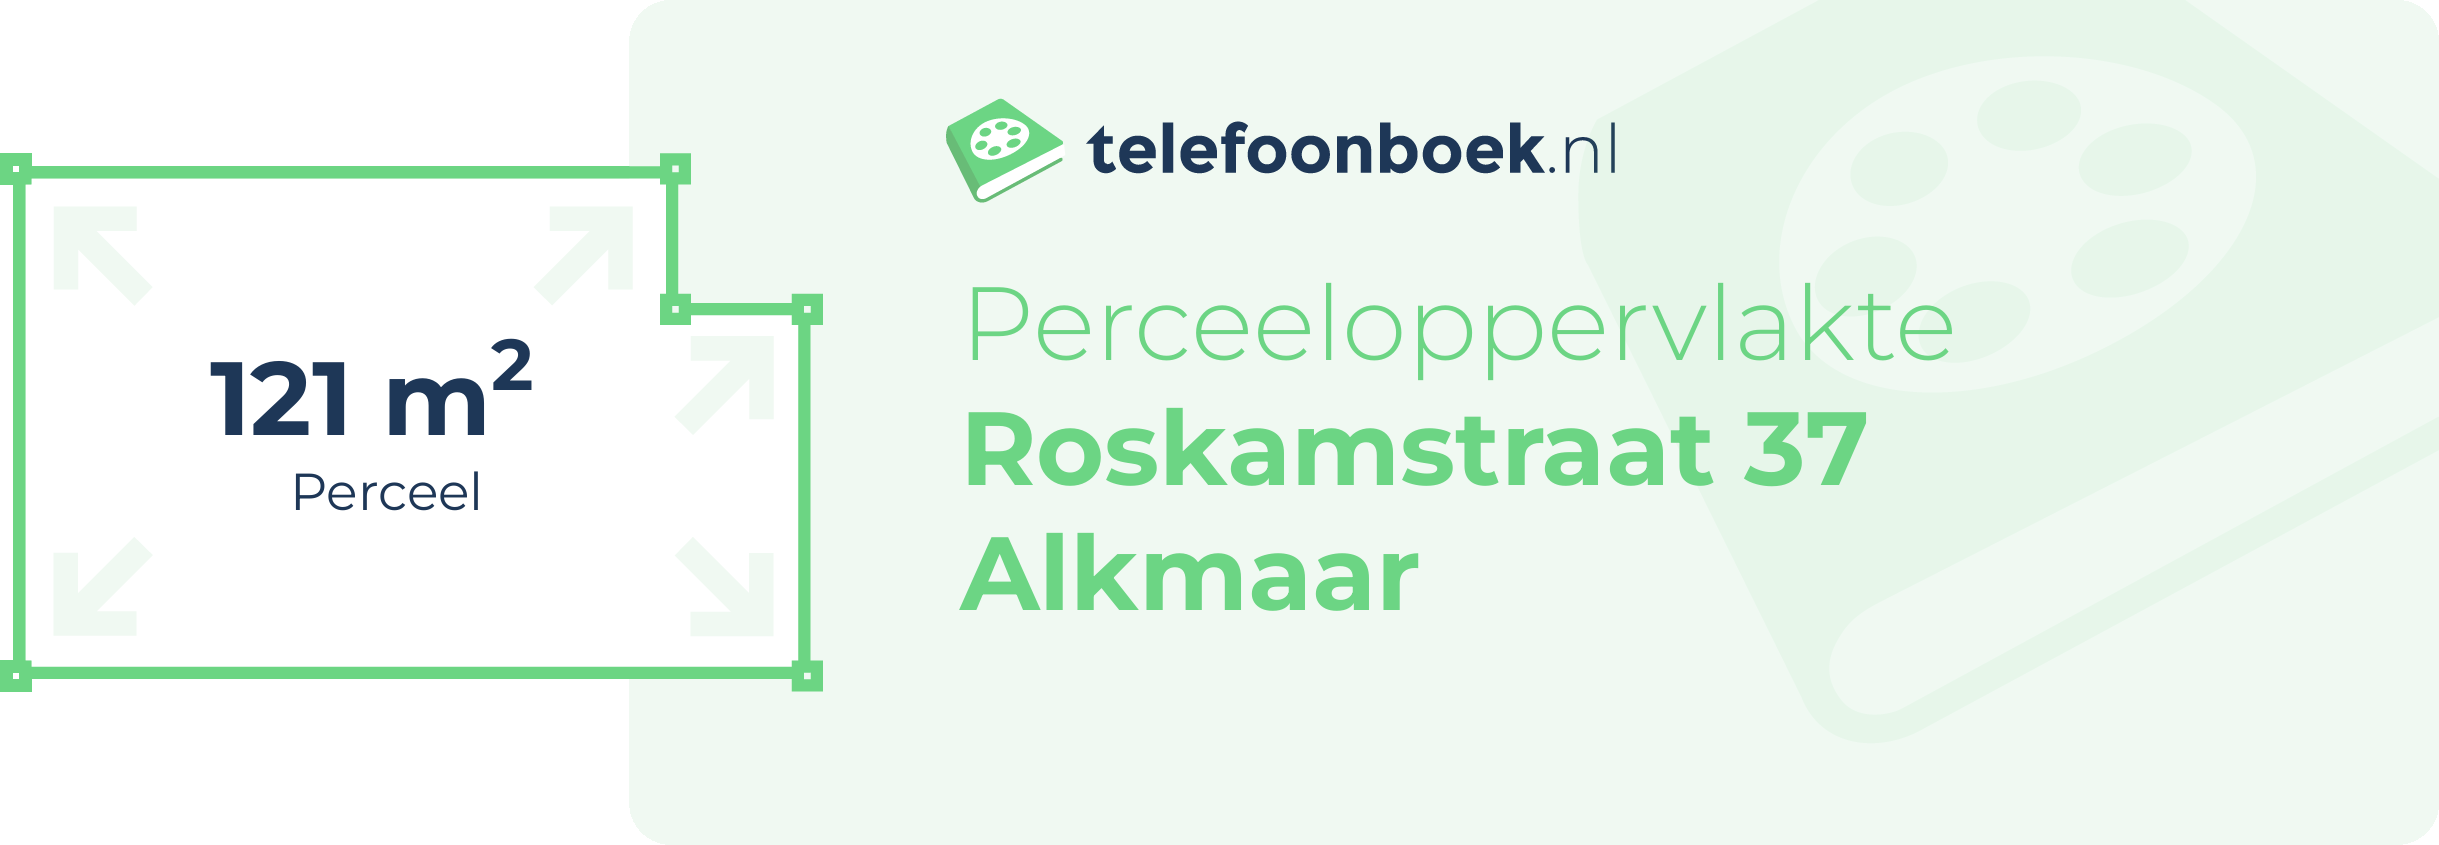 Perceeloppervlakte Roskamstraat 37 Alkmaar